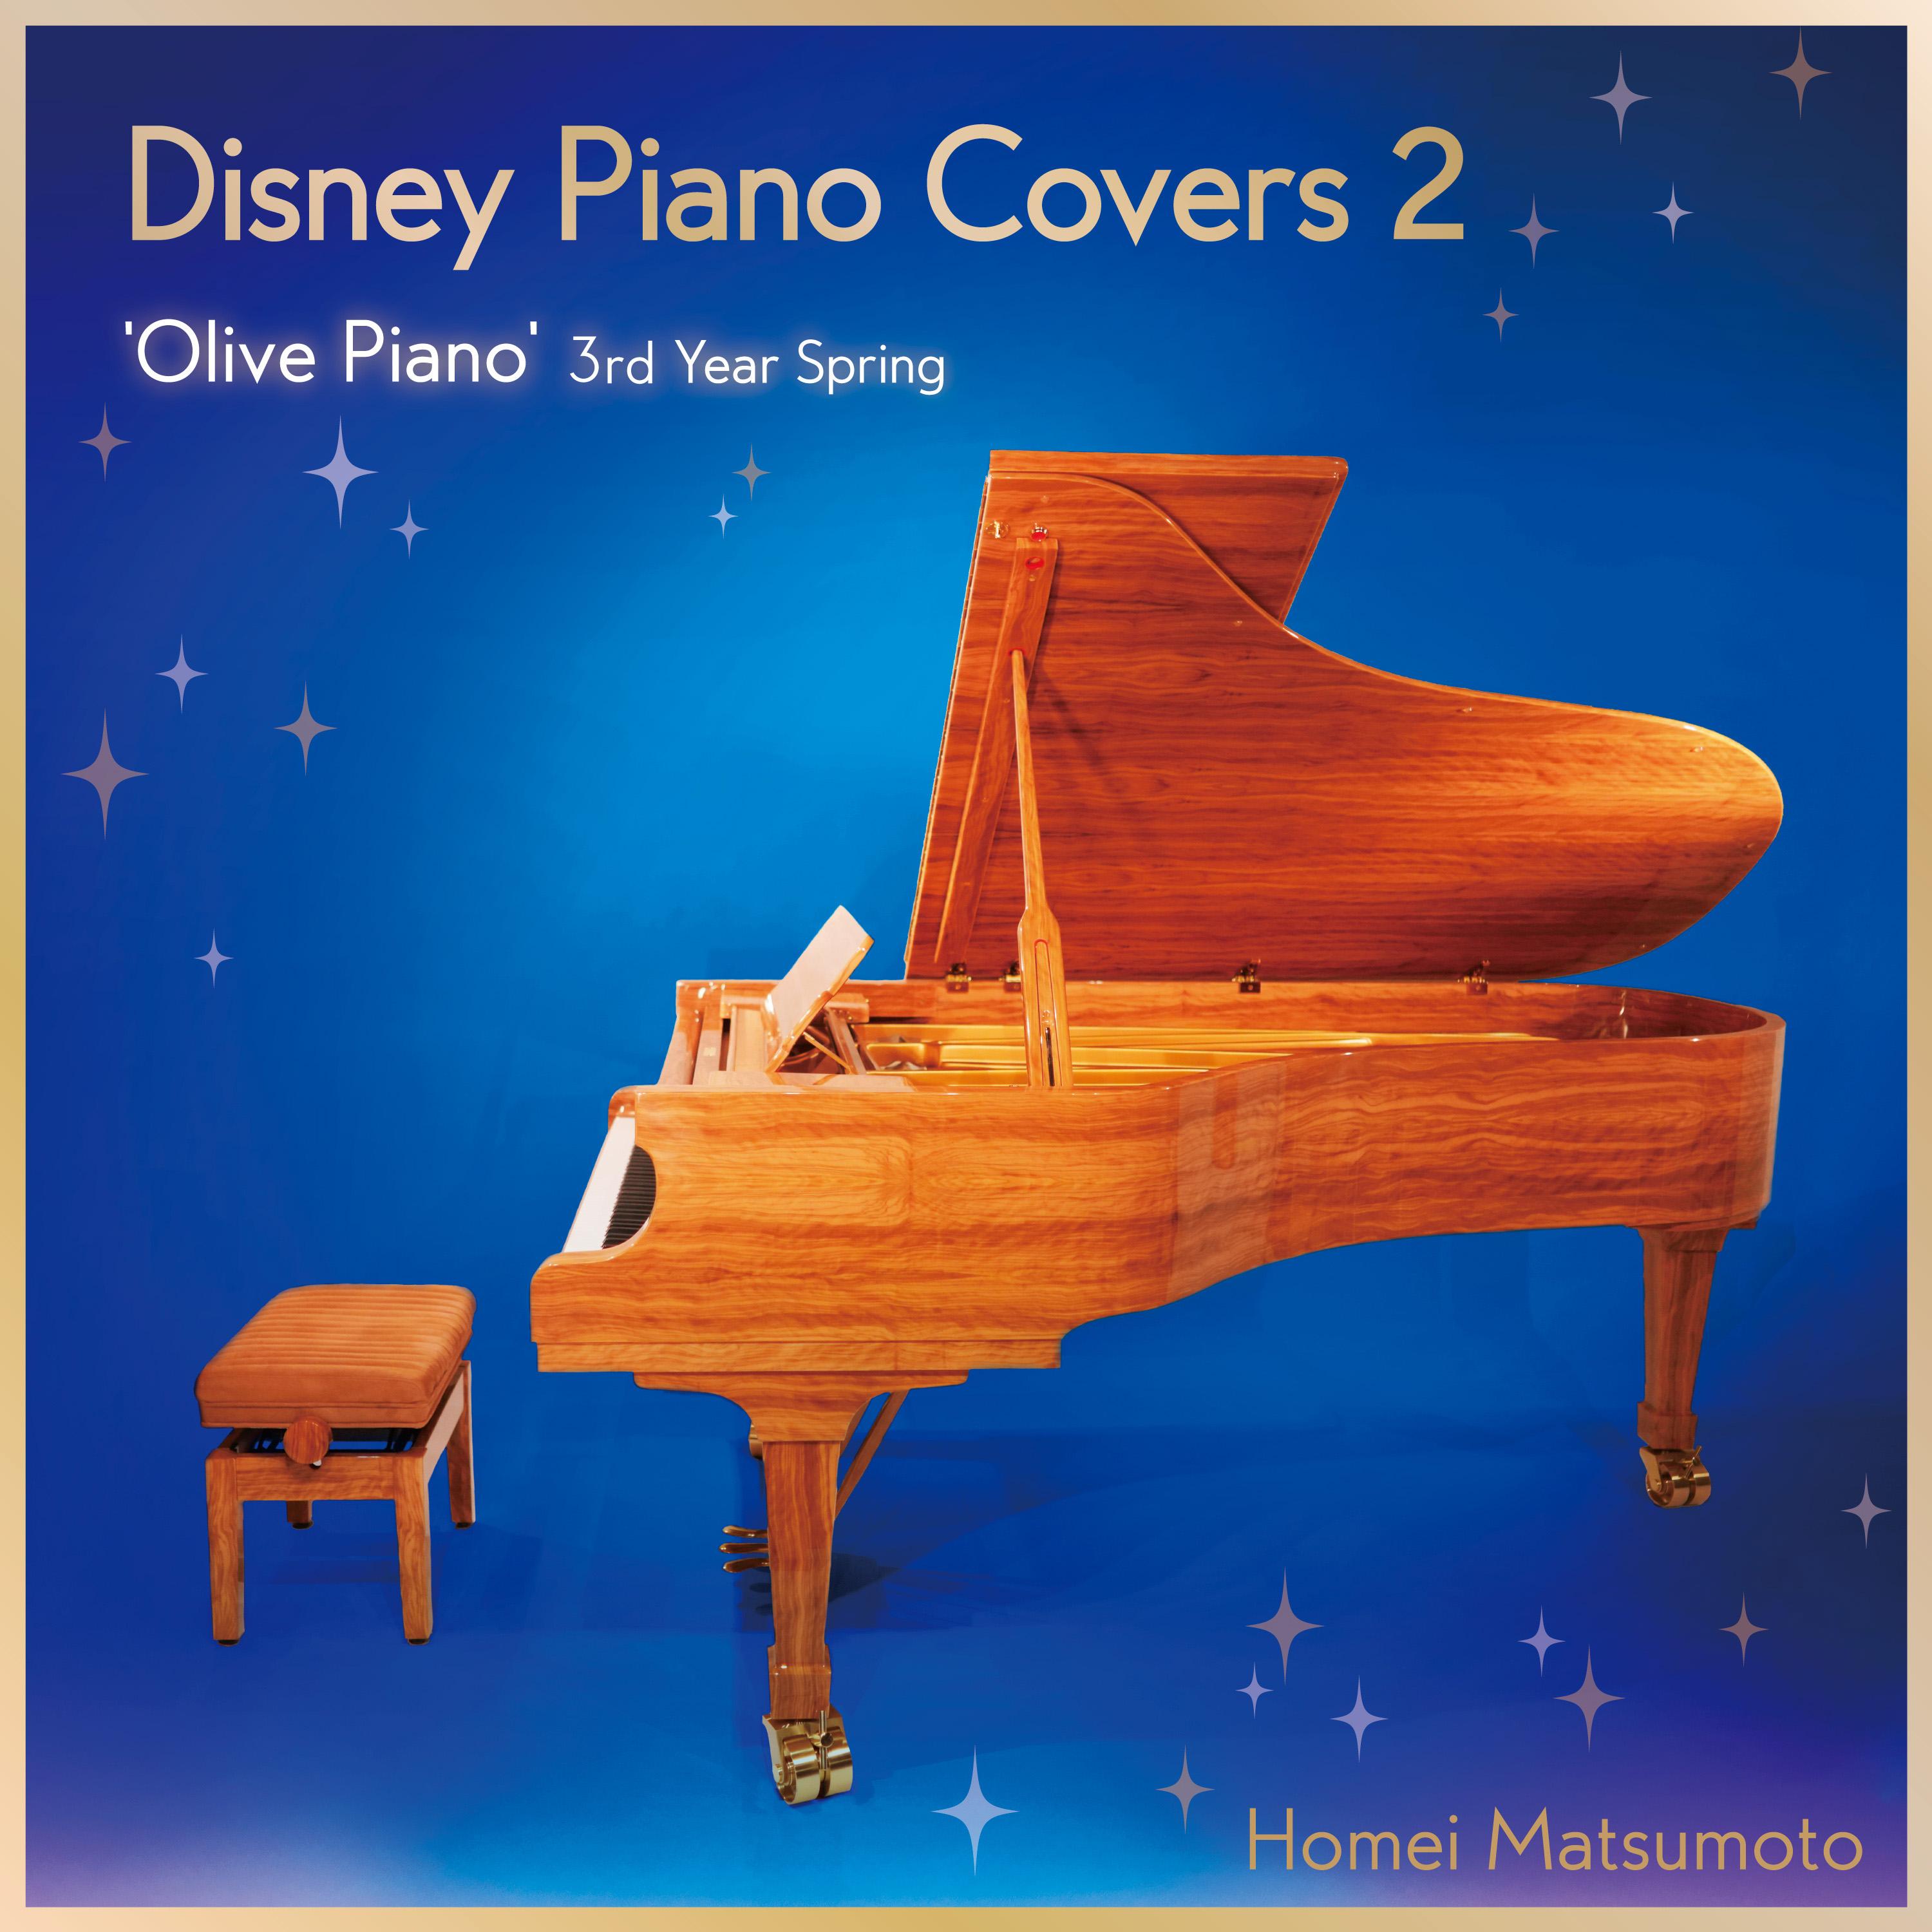 ディズニー・ピアノ・カヴァーズ 2 -'Olive Piano' 3rd Year Spring